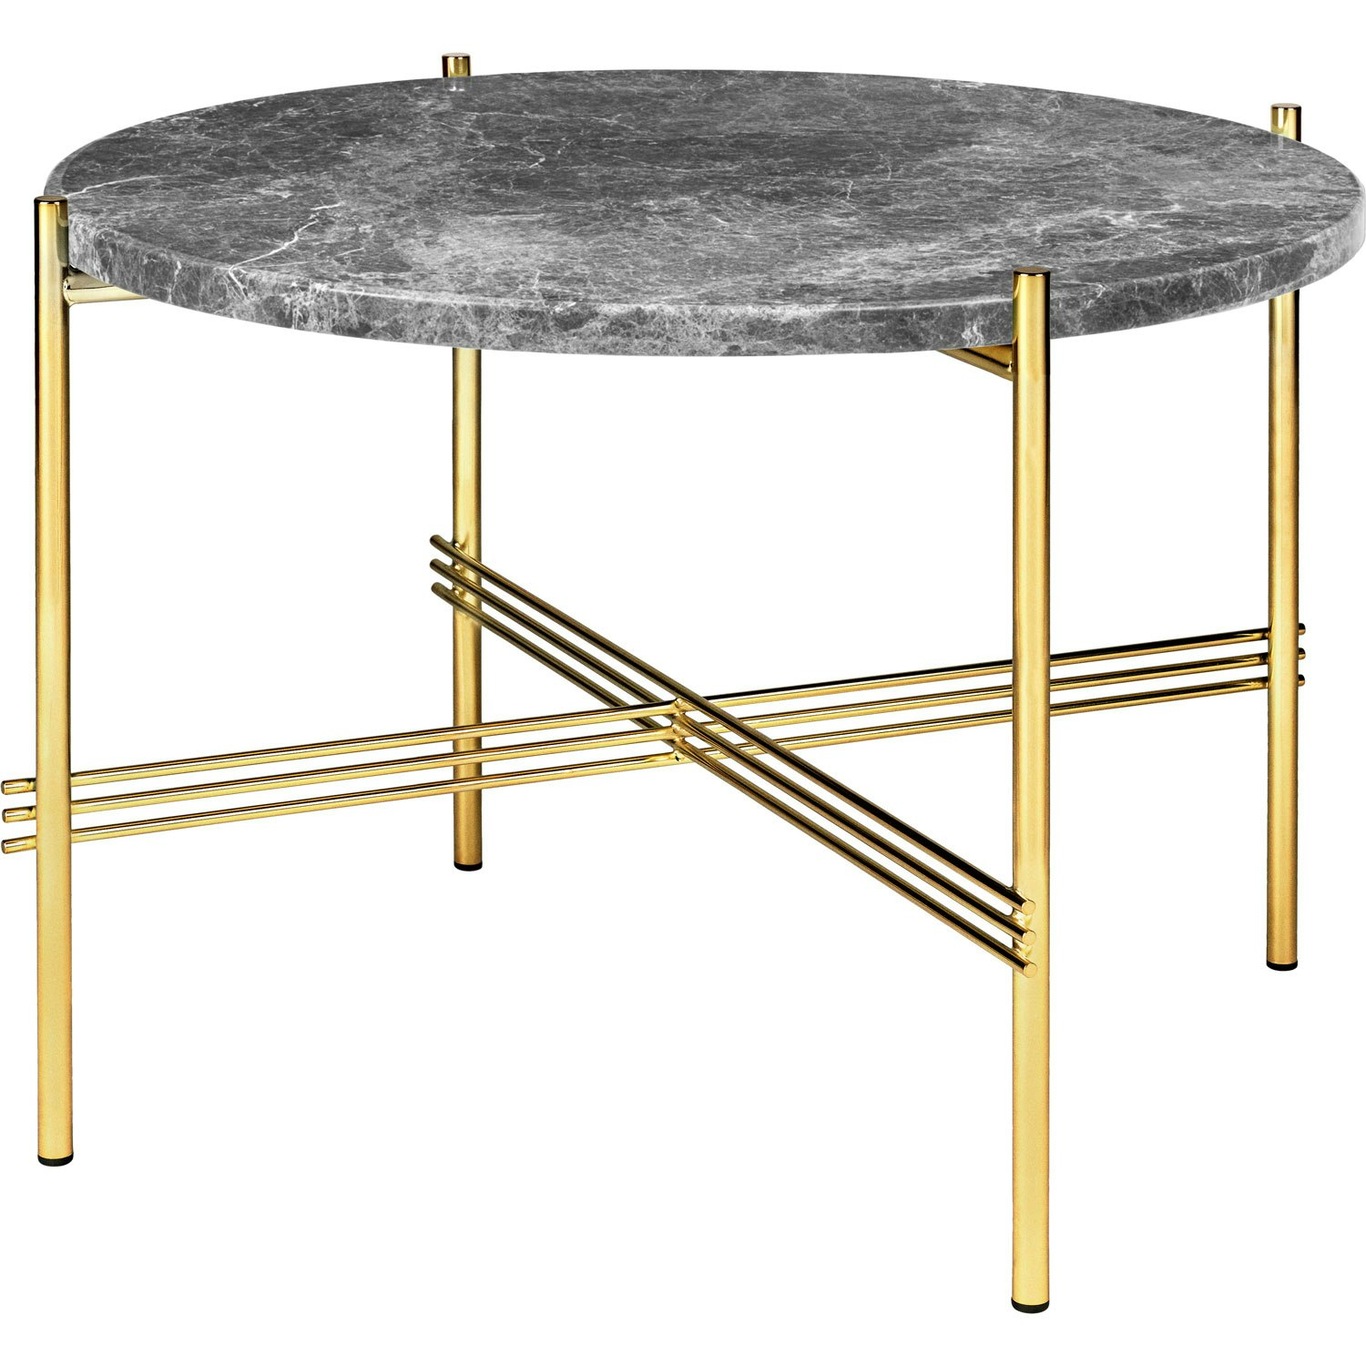 TS Coffee Table 55 cm, Brass / Grey Emperador marble